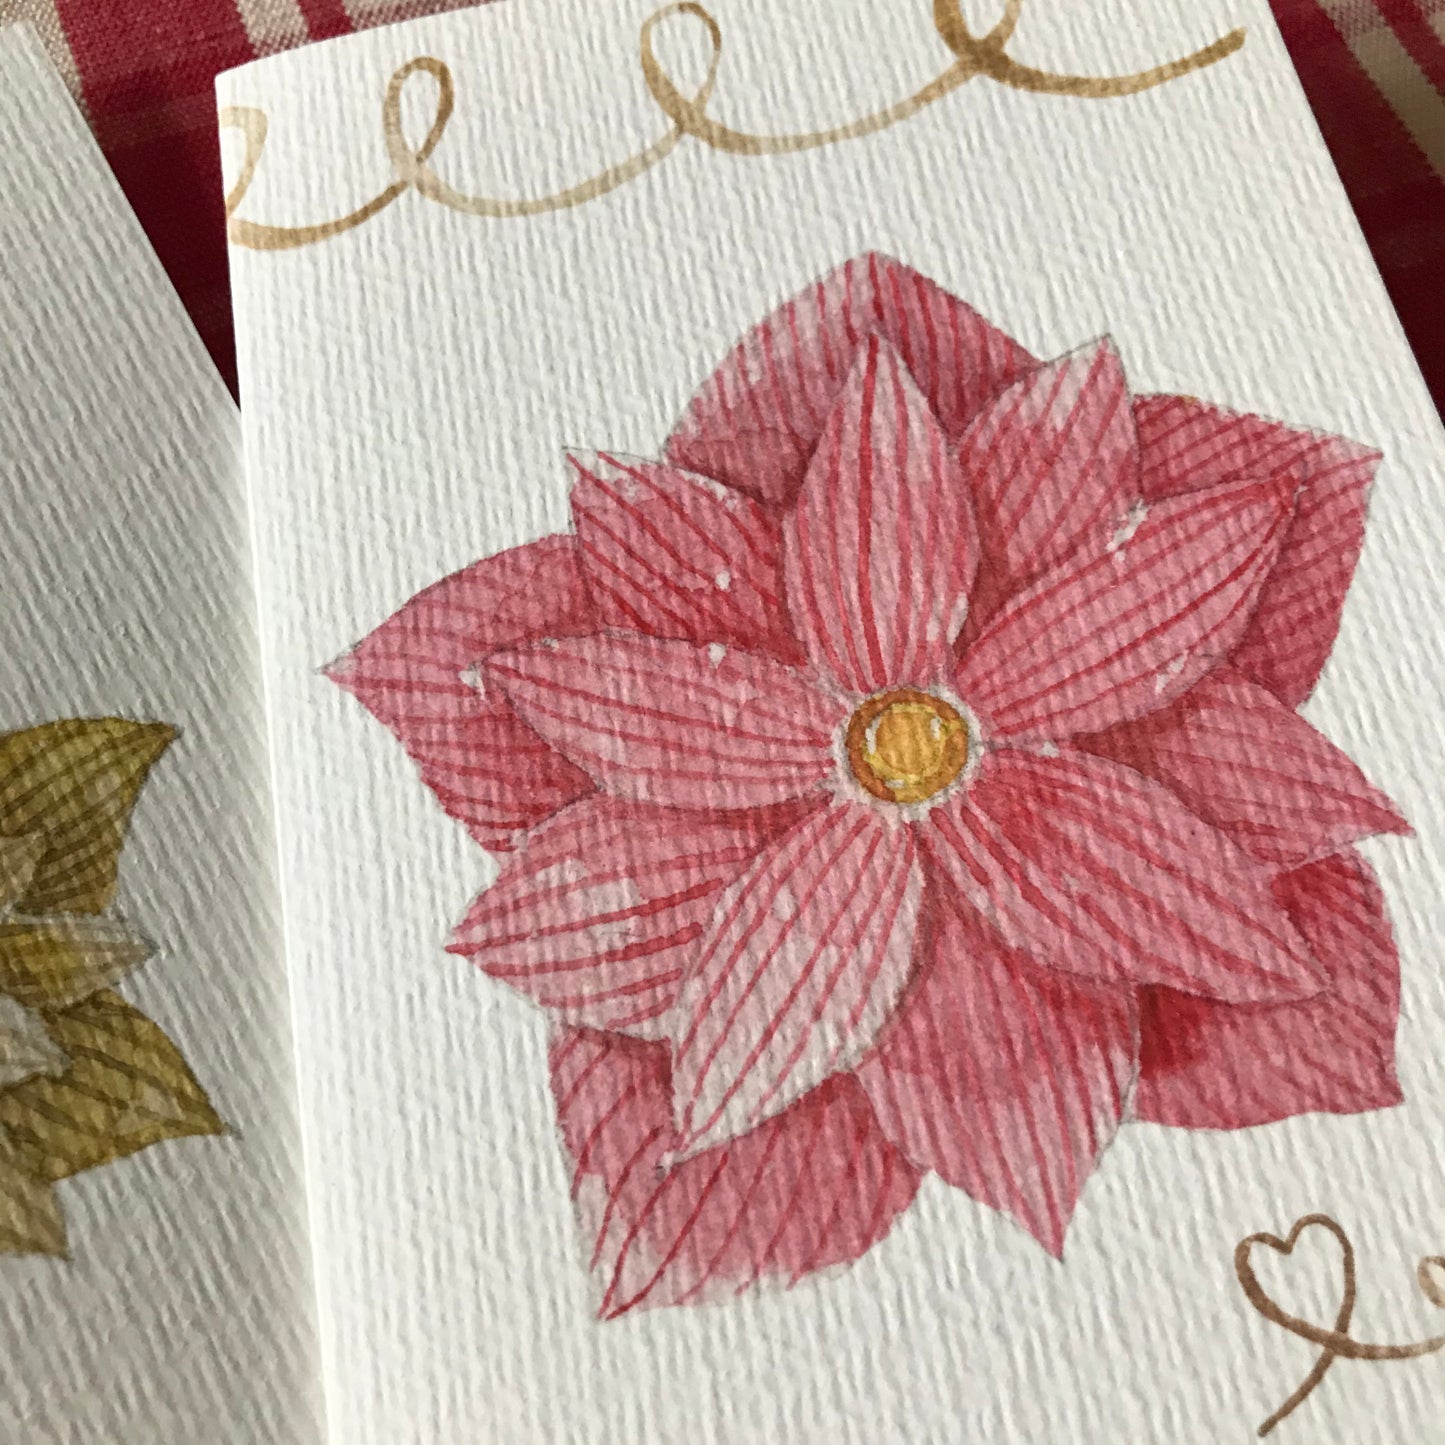 Deux cartes de vœux fleurs de Noel rose et jaune